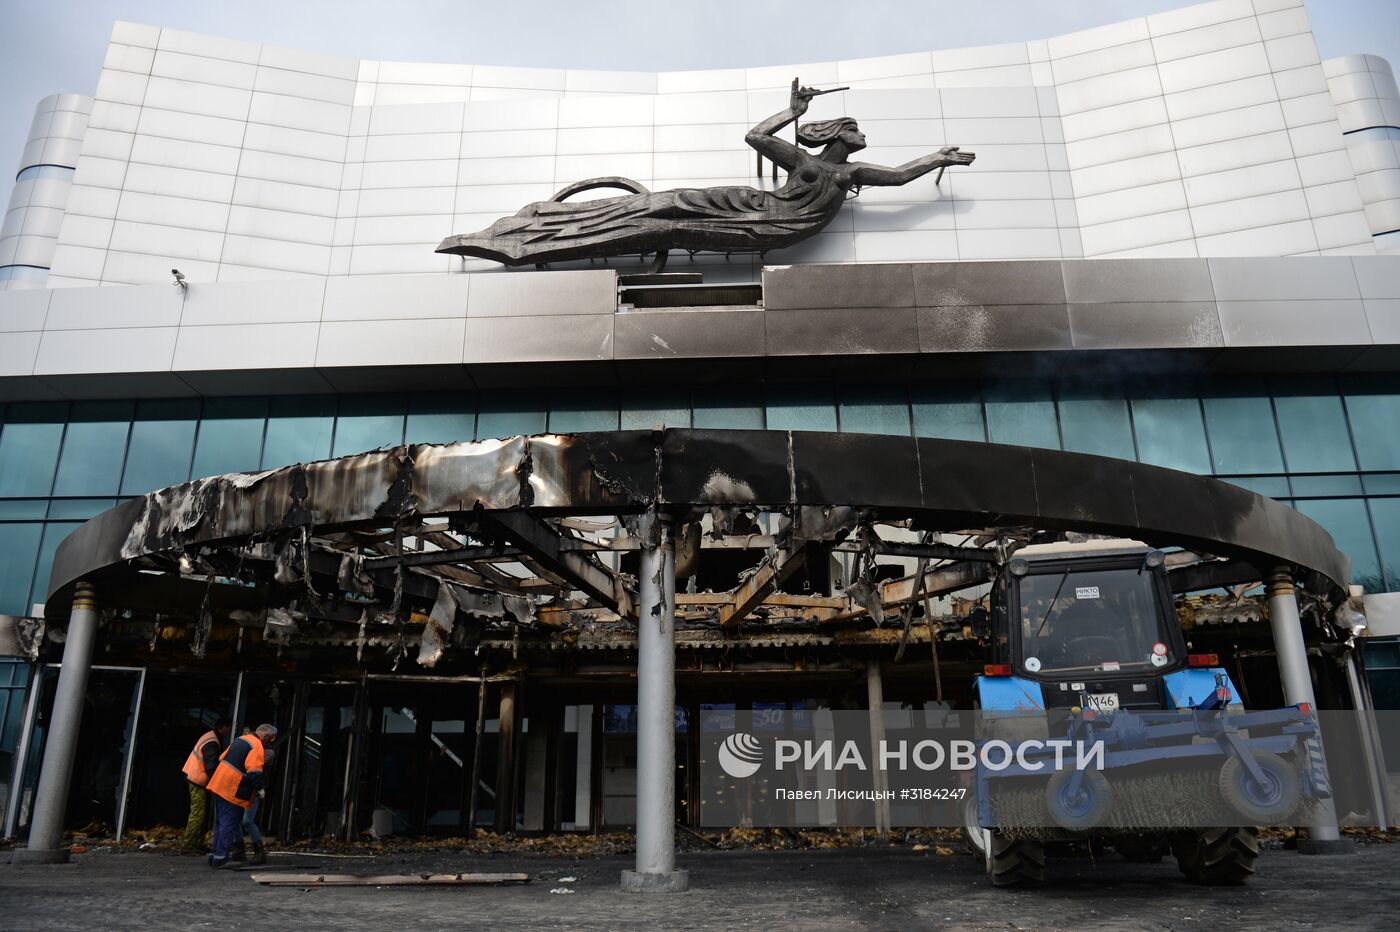 Последствия пожара в киноконцертном театре "Космос" в Екатеринбурге